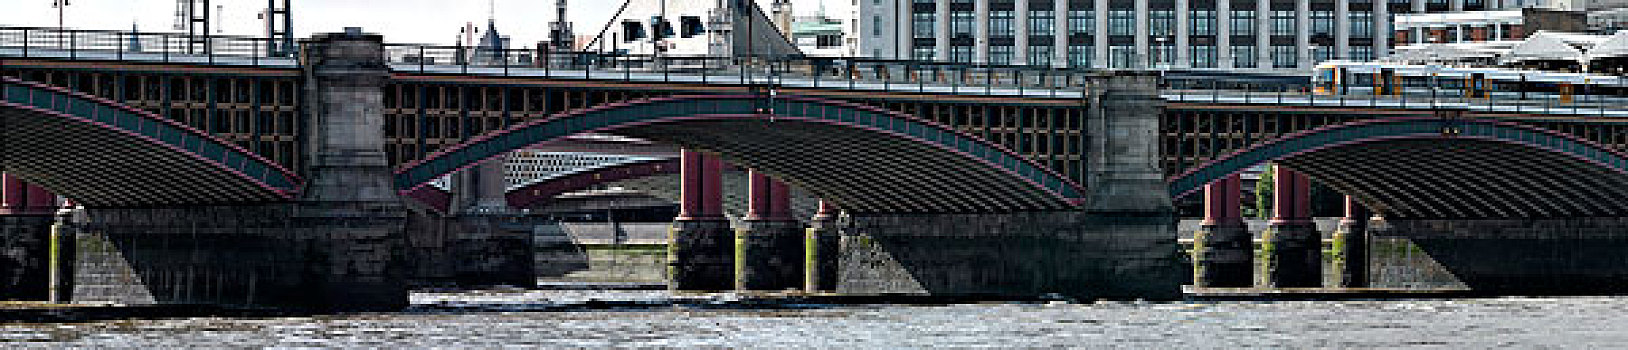 黑衣修道士桥,南华克,伦敦